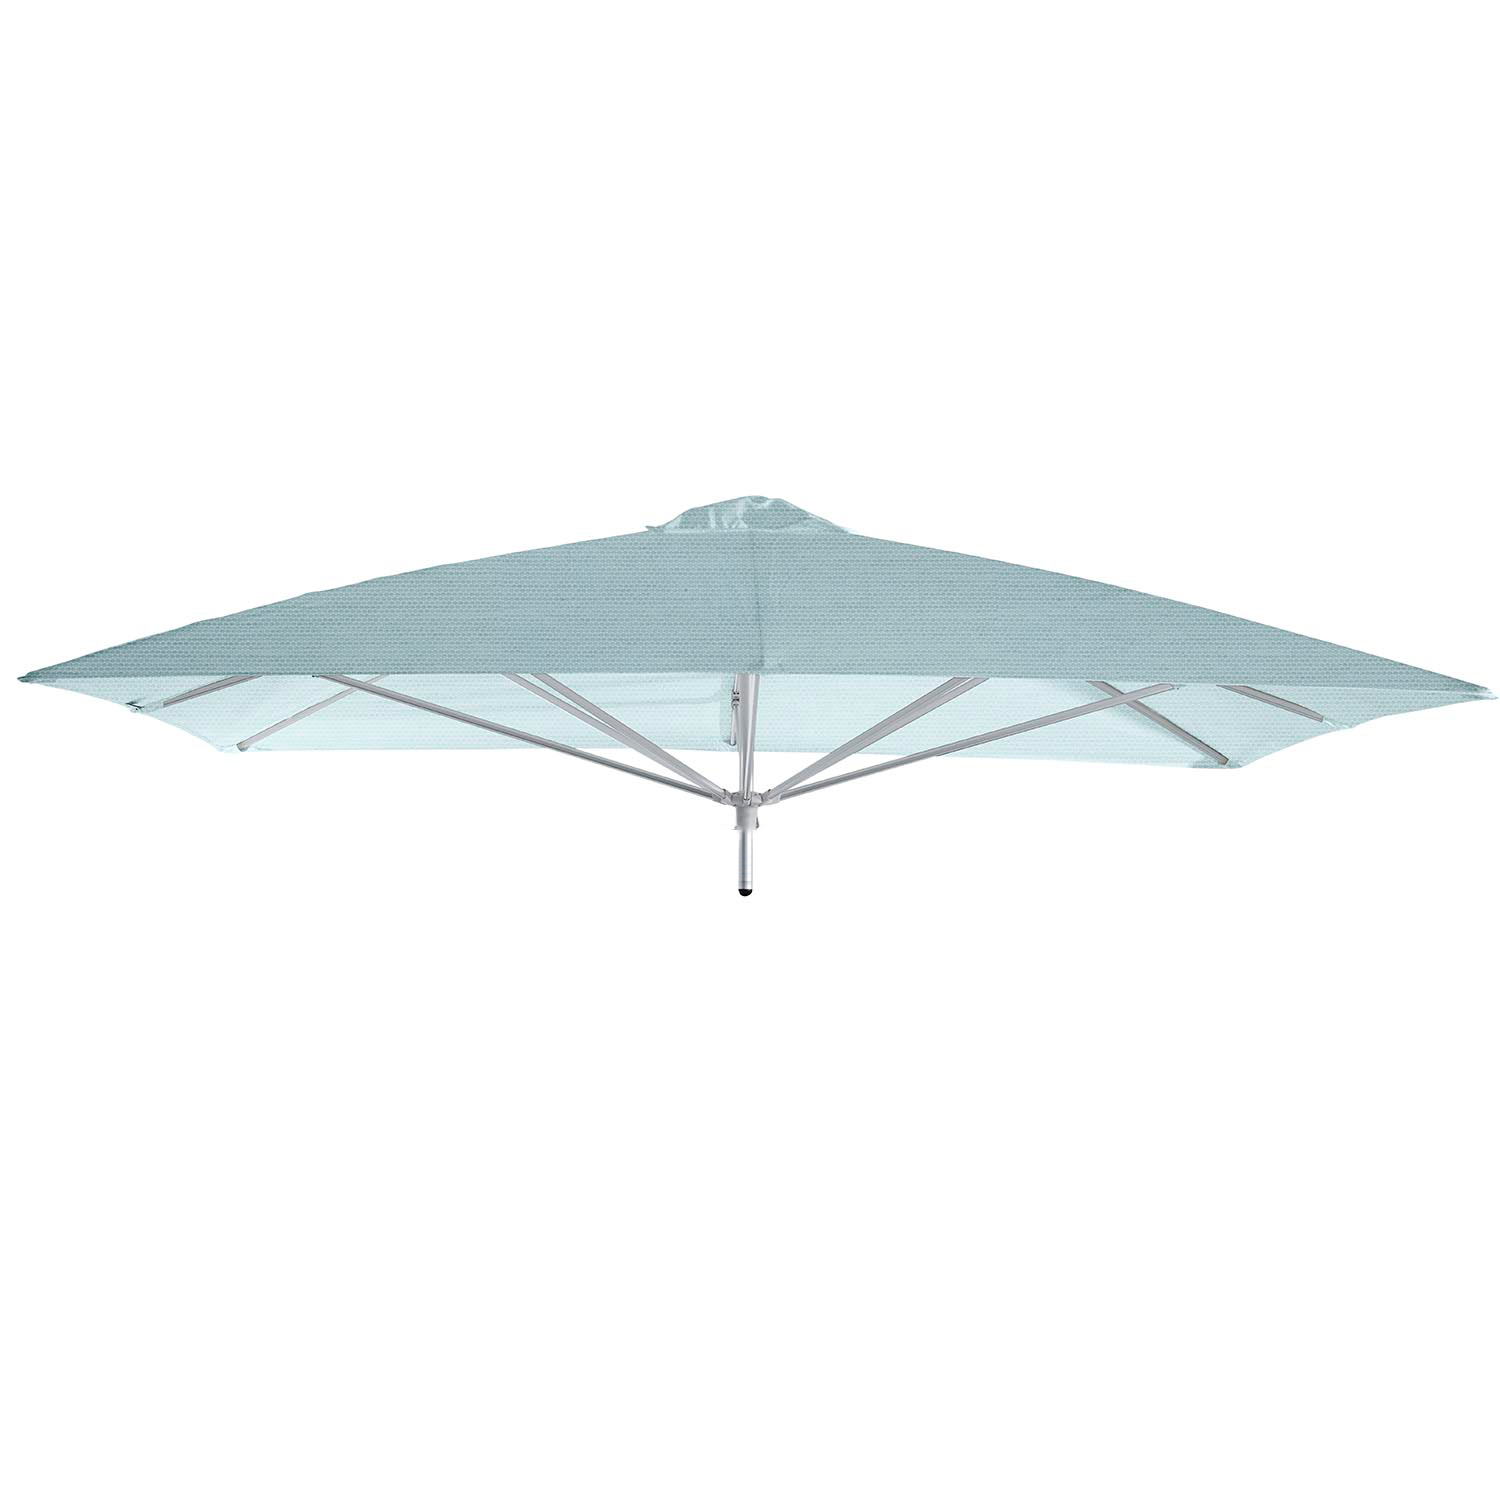 Paraflex Neo parasolkap 230x230cm - Sunbrella (Curacao)